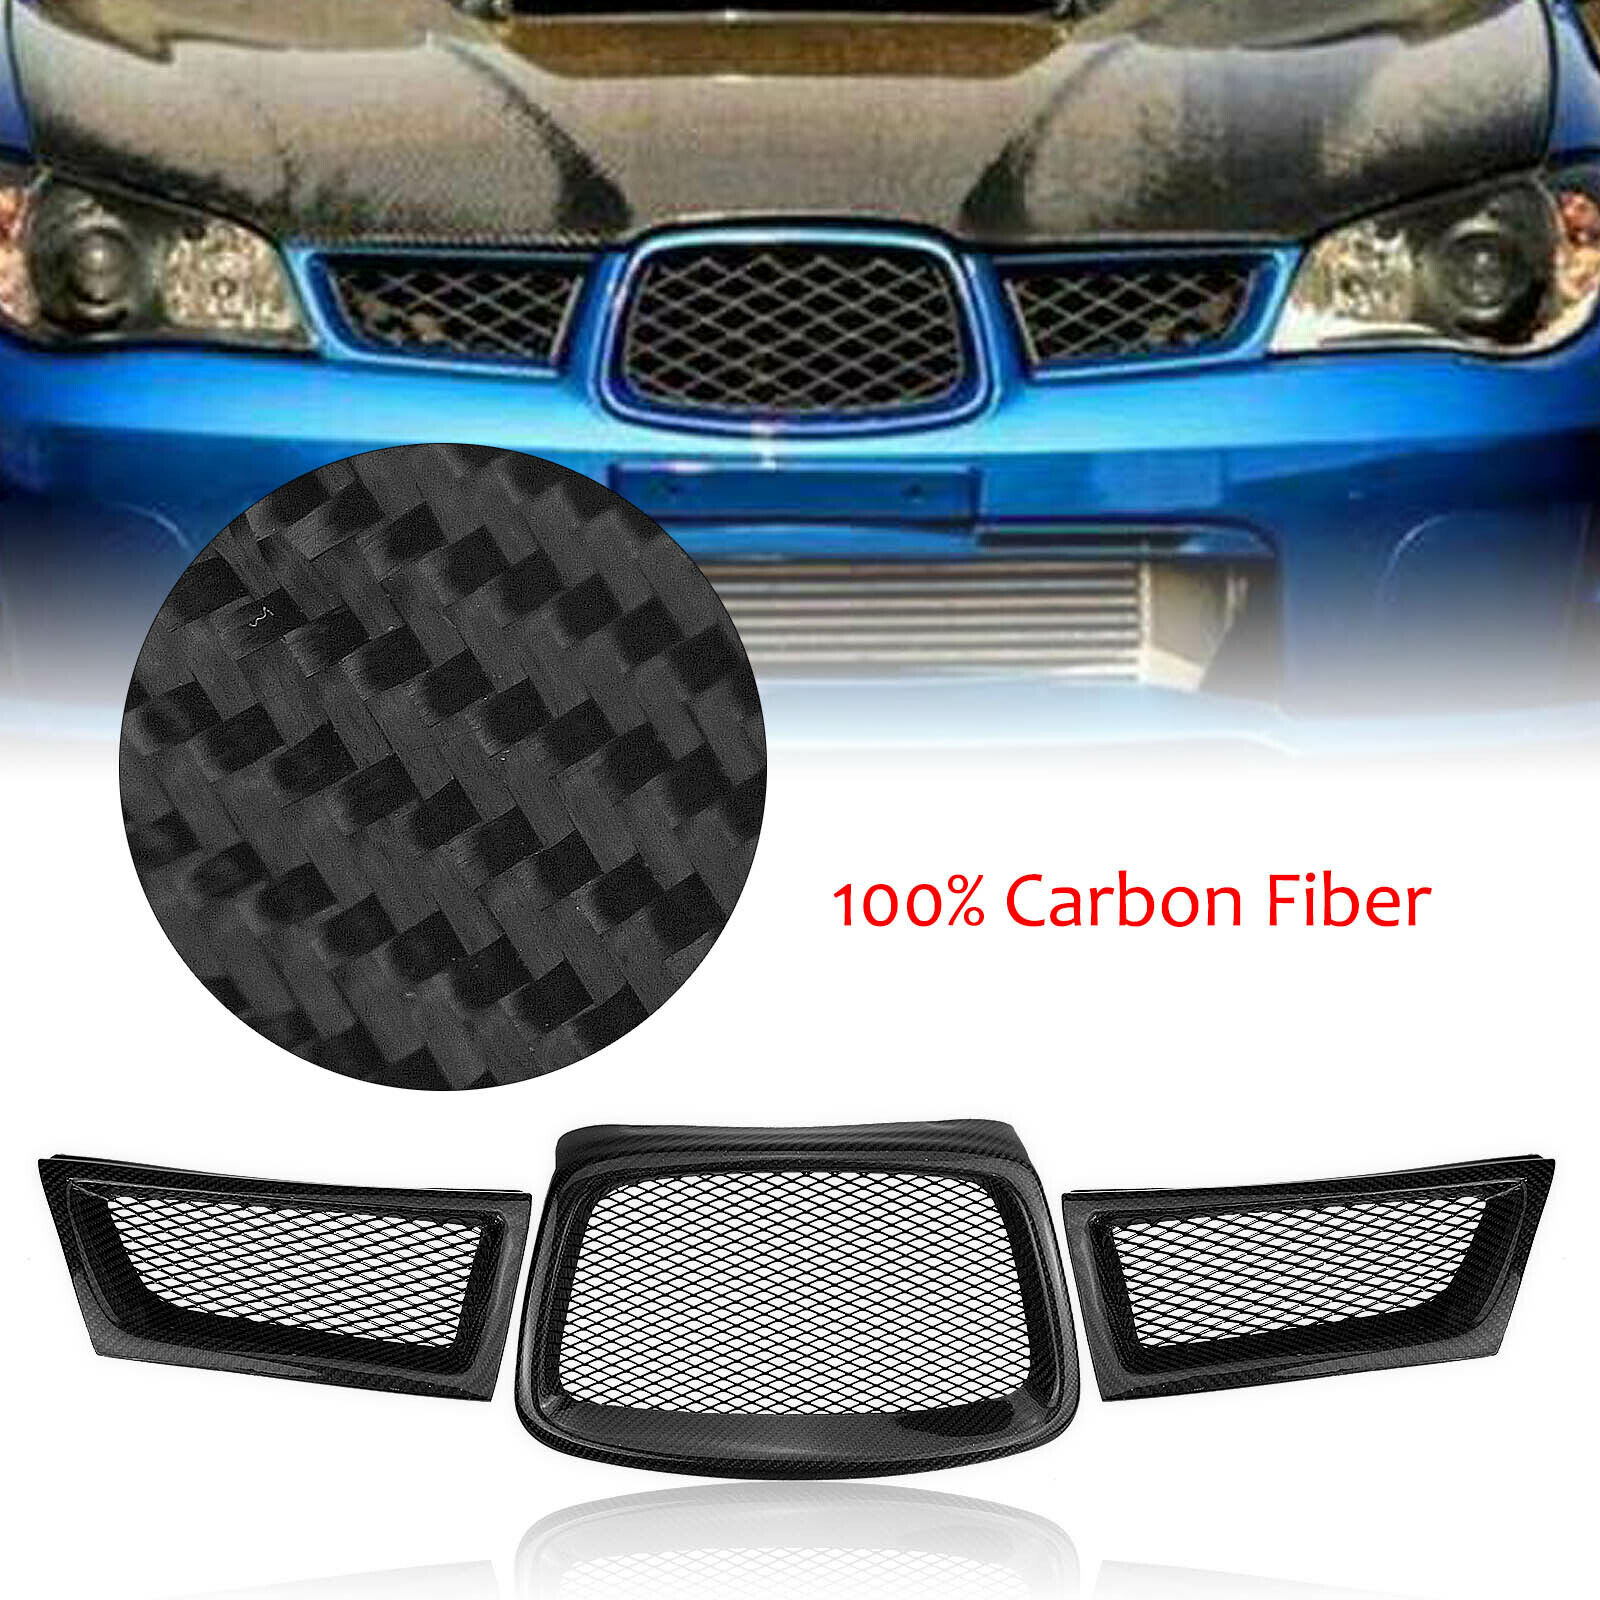 Carbon Fiber Front Upper Grill Grille For Subaru Impreza 9th WRX STI 2006-2007 A